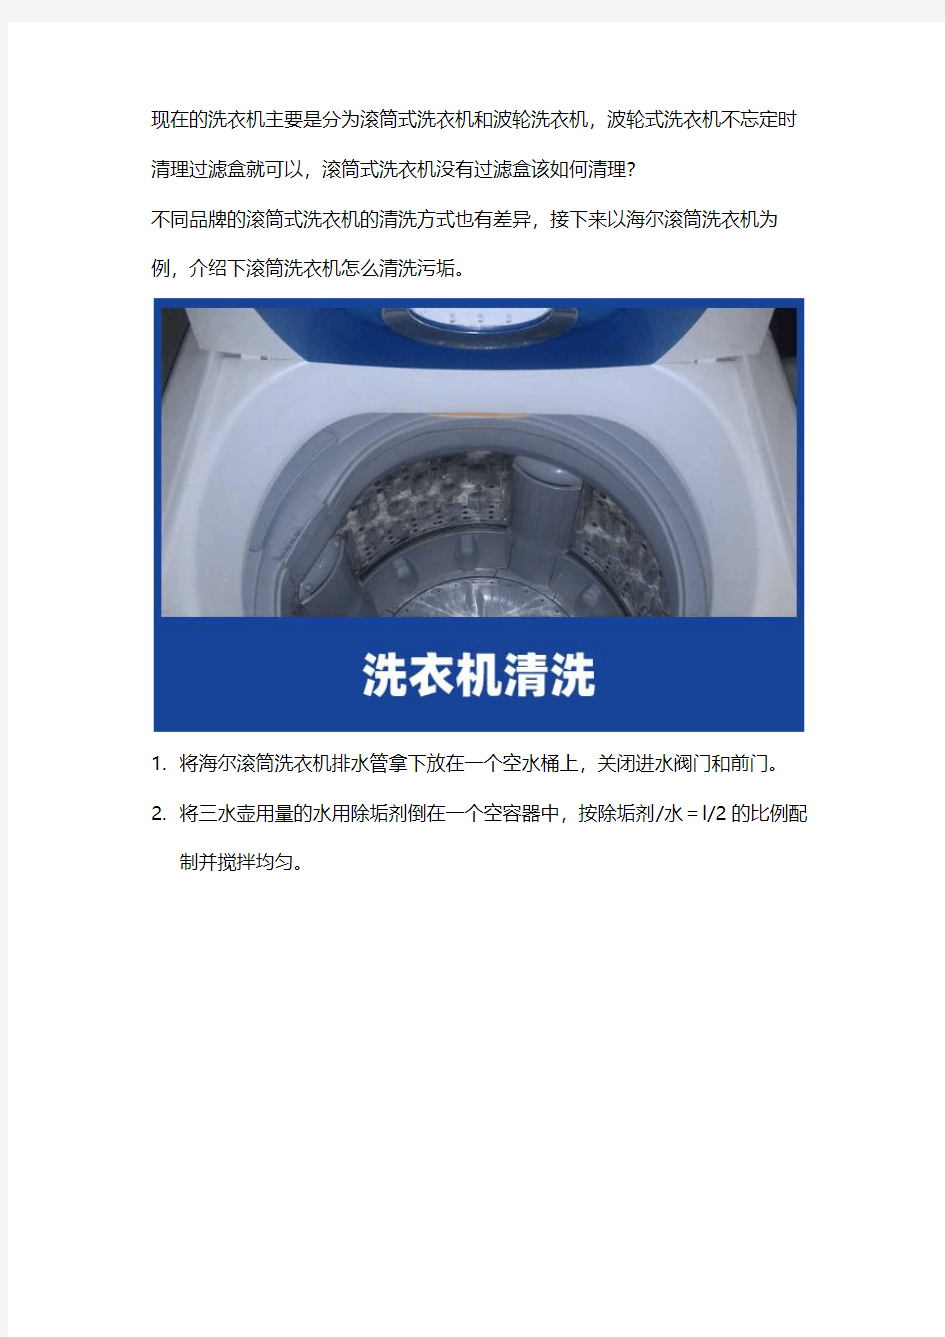 海尔洗衣机维修：清洗污垢